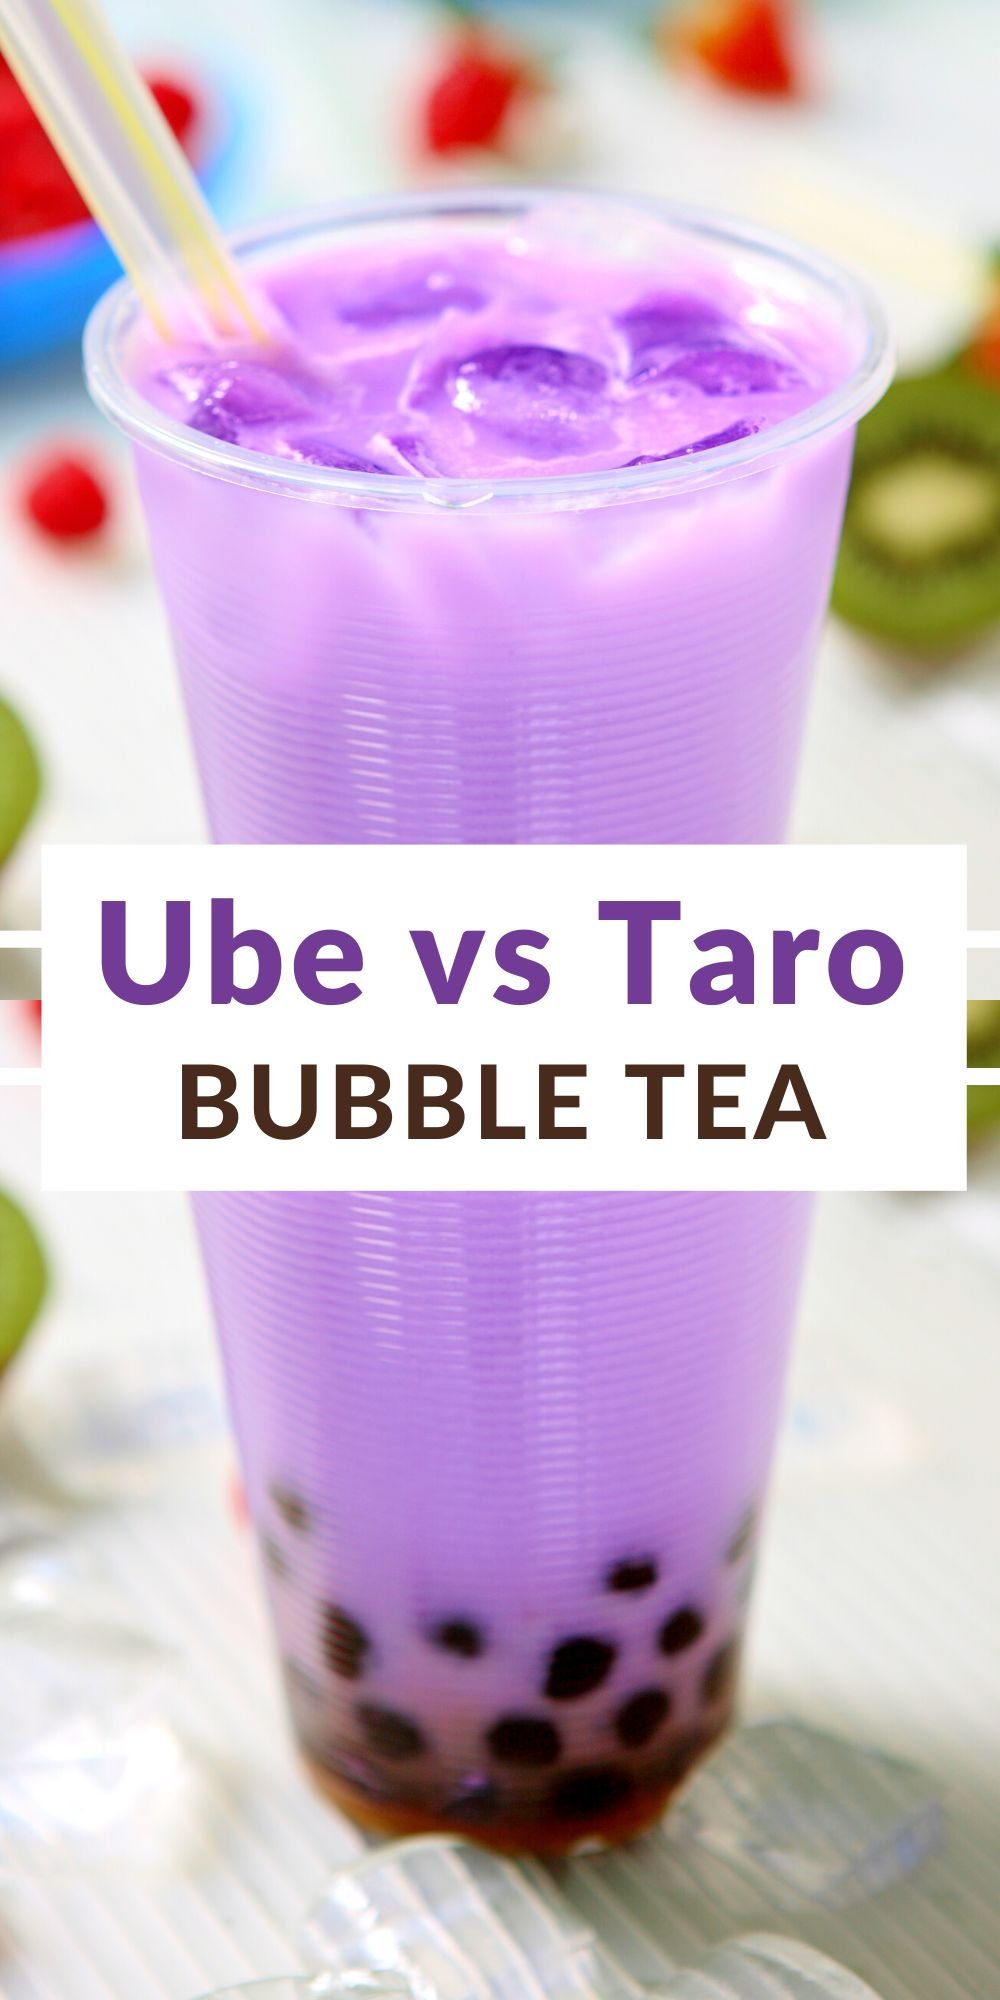 taro vs ube bubble tea